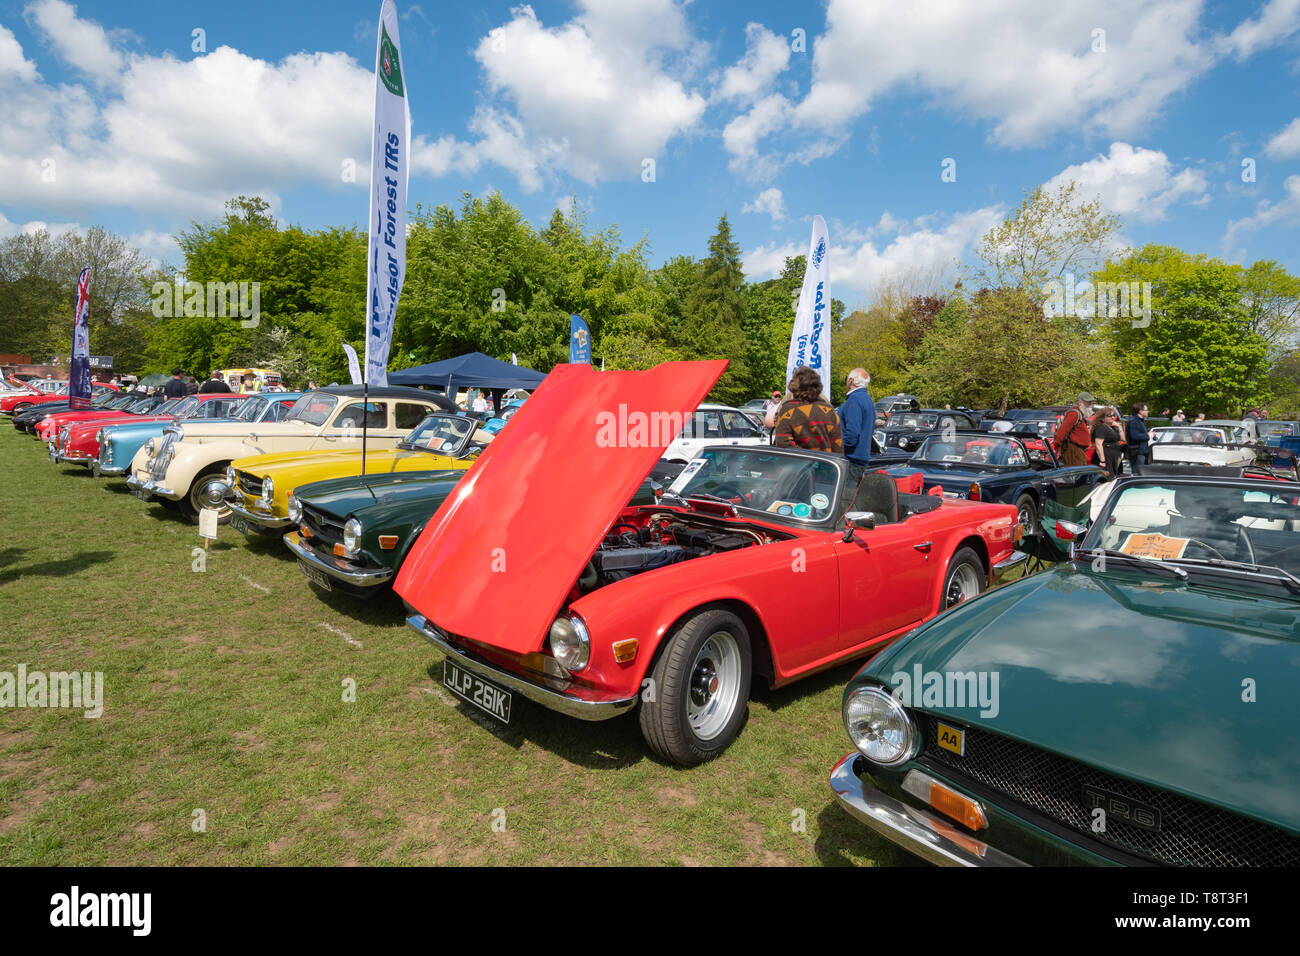 Coches clásicos incluyendo Triumph TR coches antiguos en el Festival de transporte Basingstoke Foto de stock